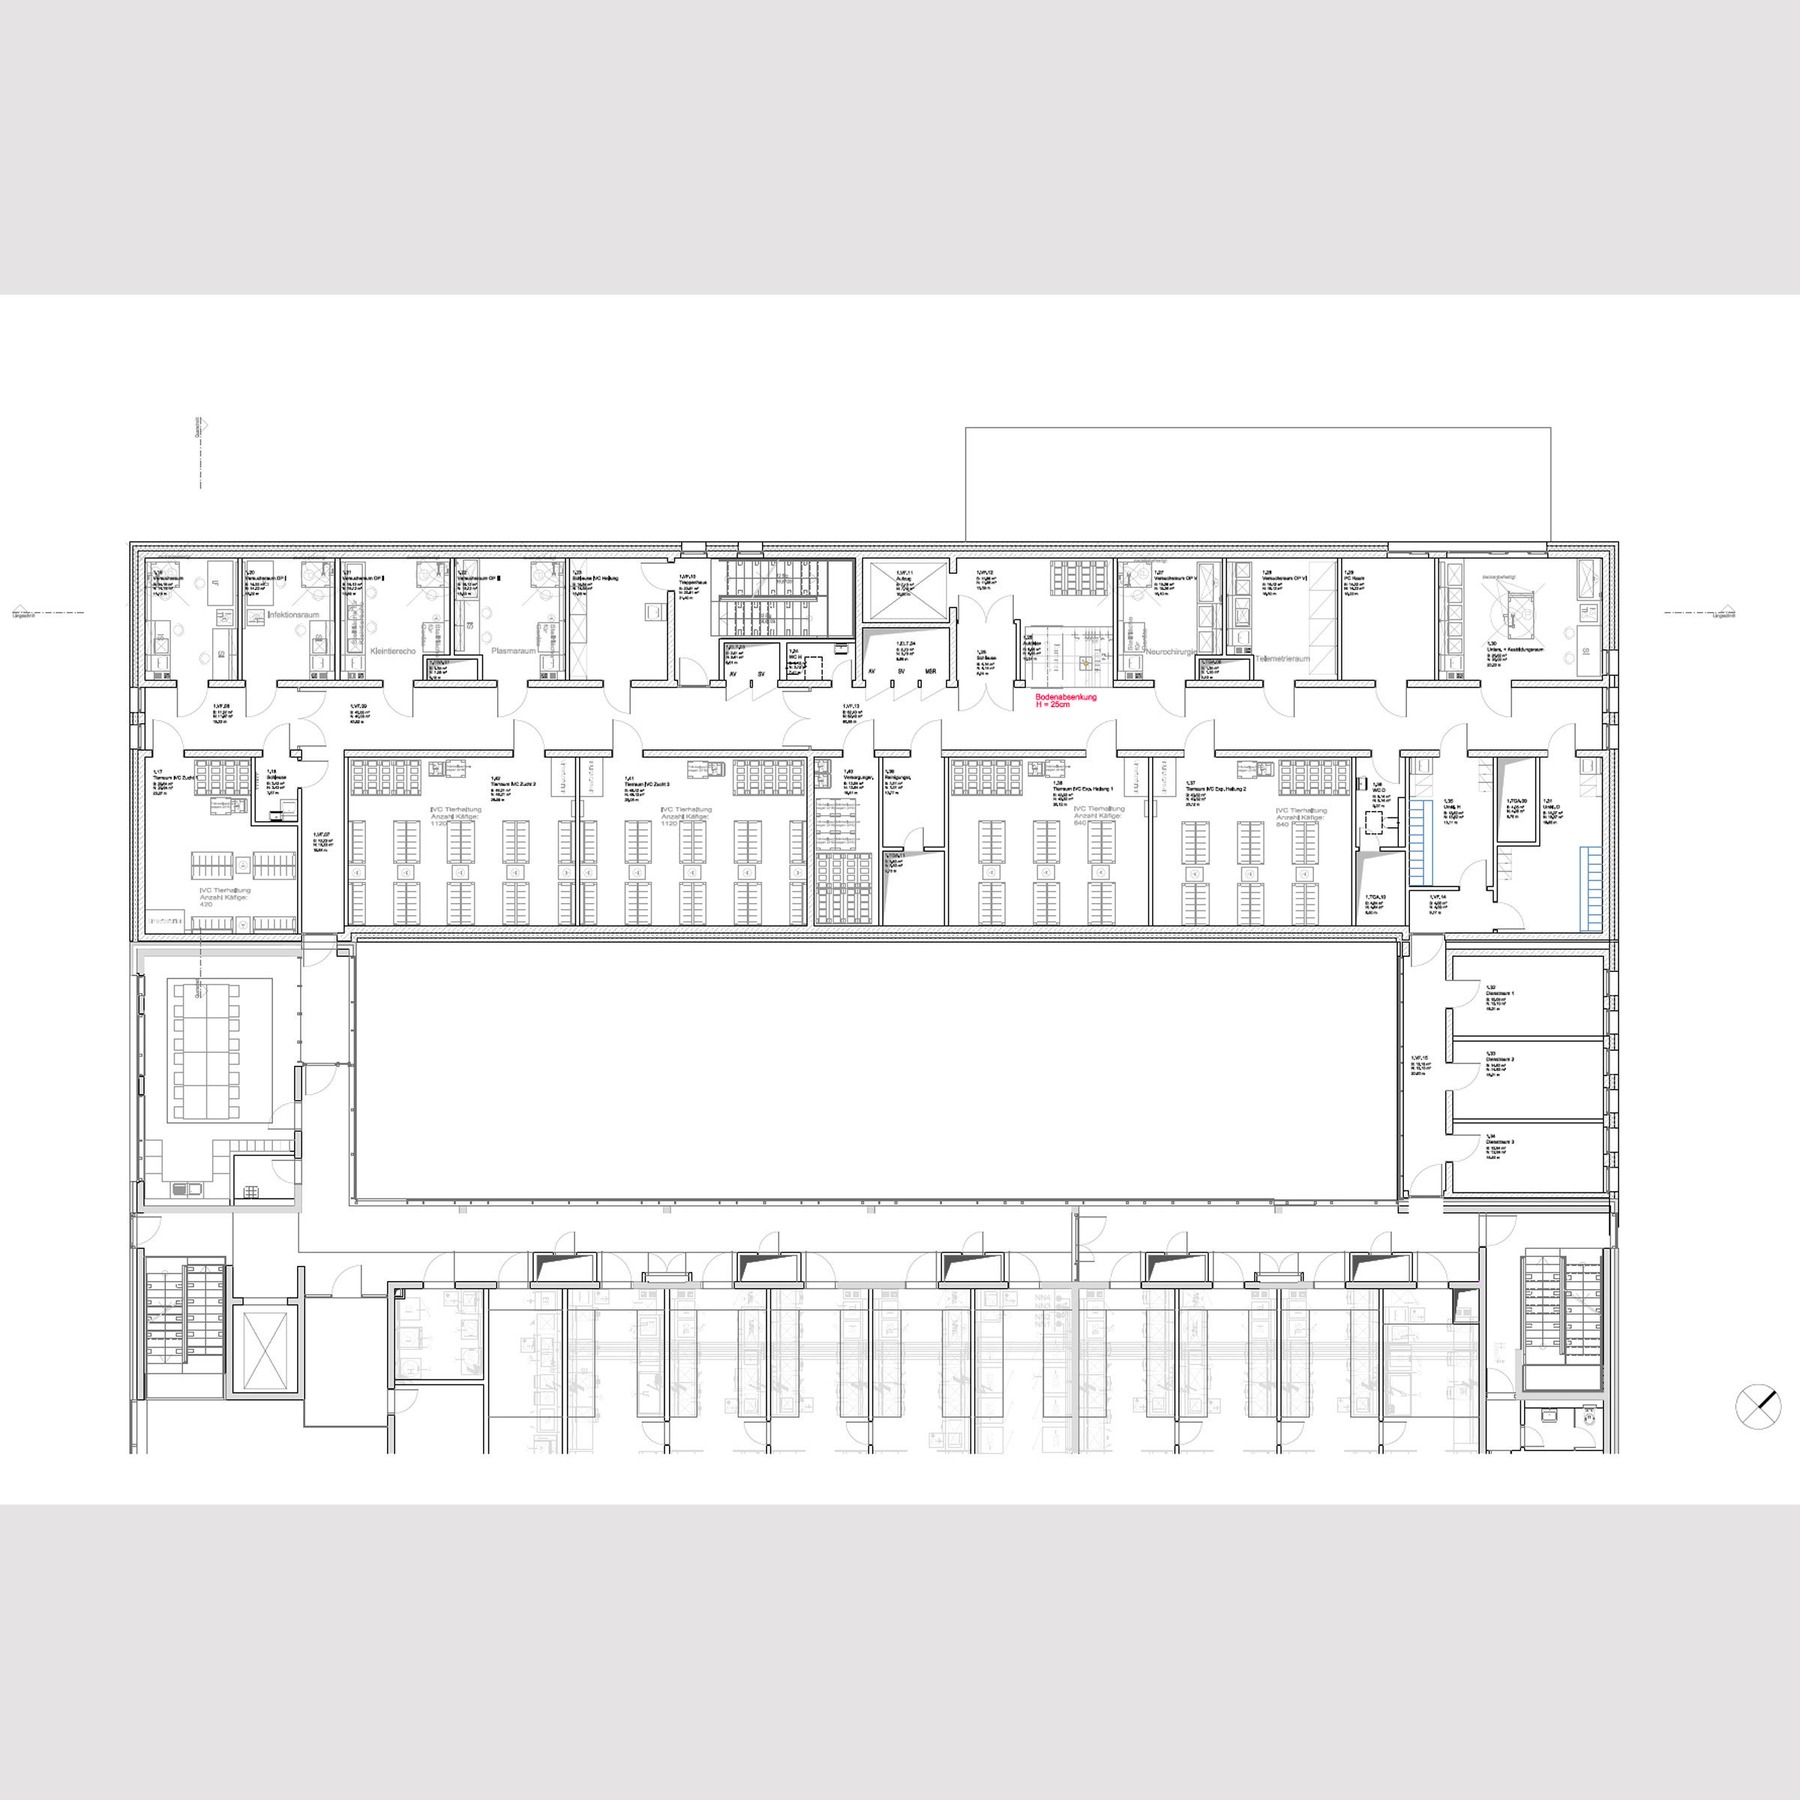 Grundriss 1. Obergeschoss © 2017 tönis + schroeter + jansen freie architekten gmbh, Lübeck